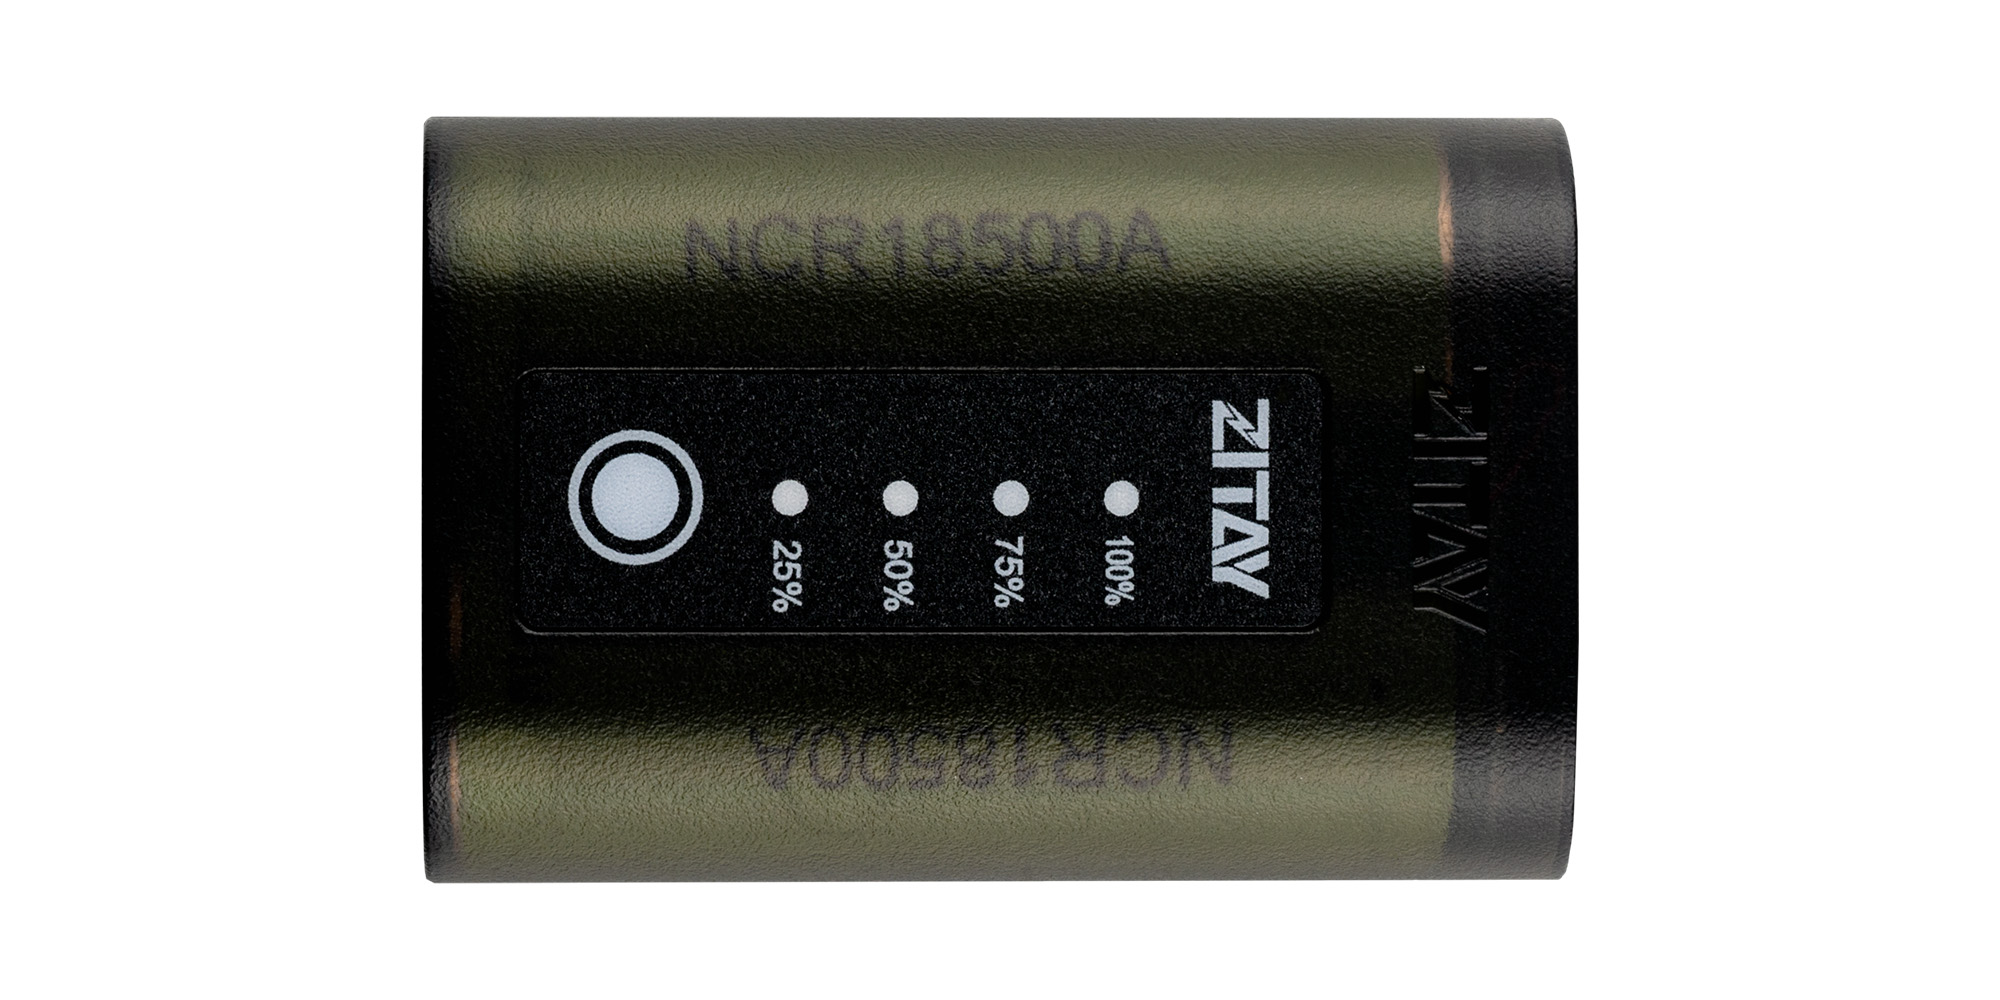 Akumulator Zitay zamiennik LP-E6 - Nieprzeciętny wygląd